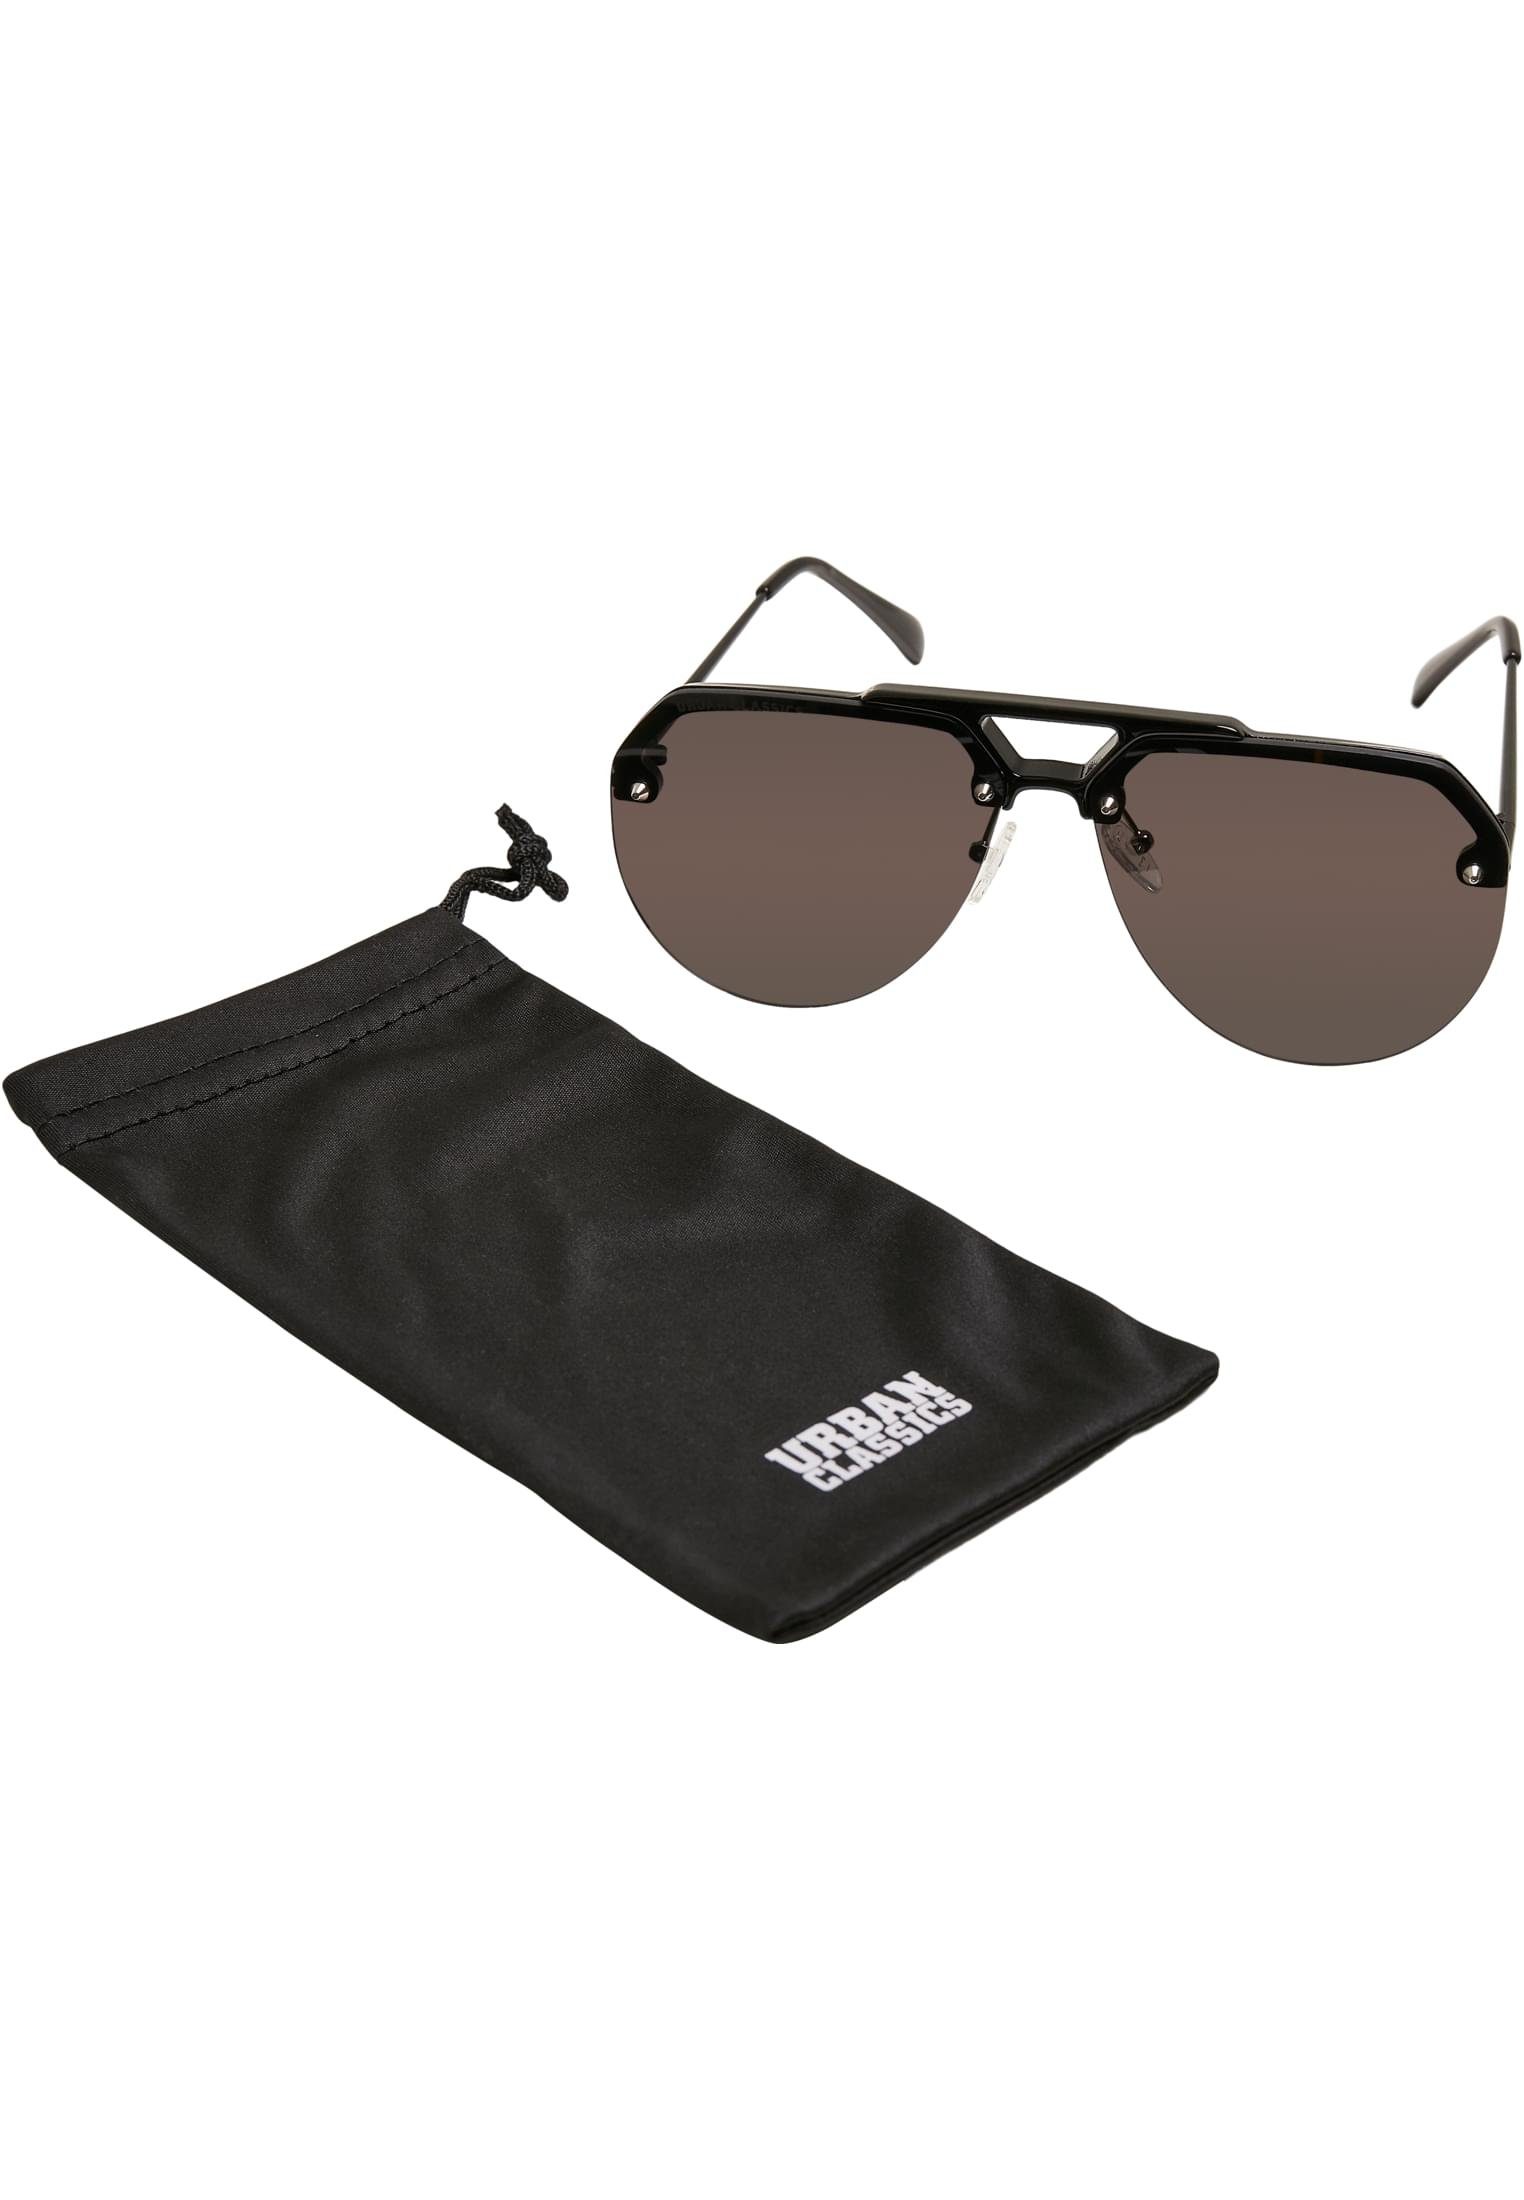 black Sonnenbrille Sunglasses URBAN Toronto CLASSICS Unisex